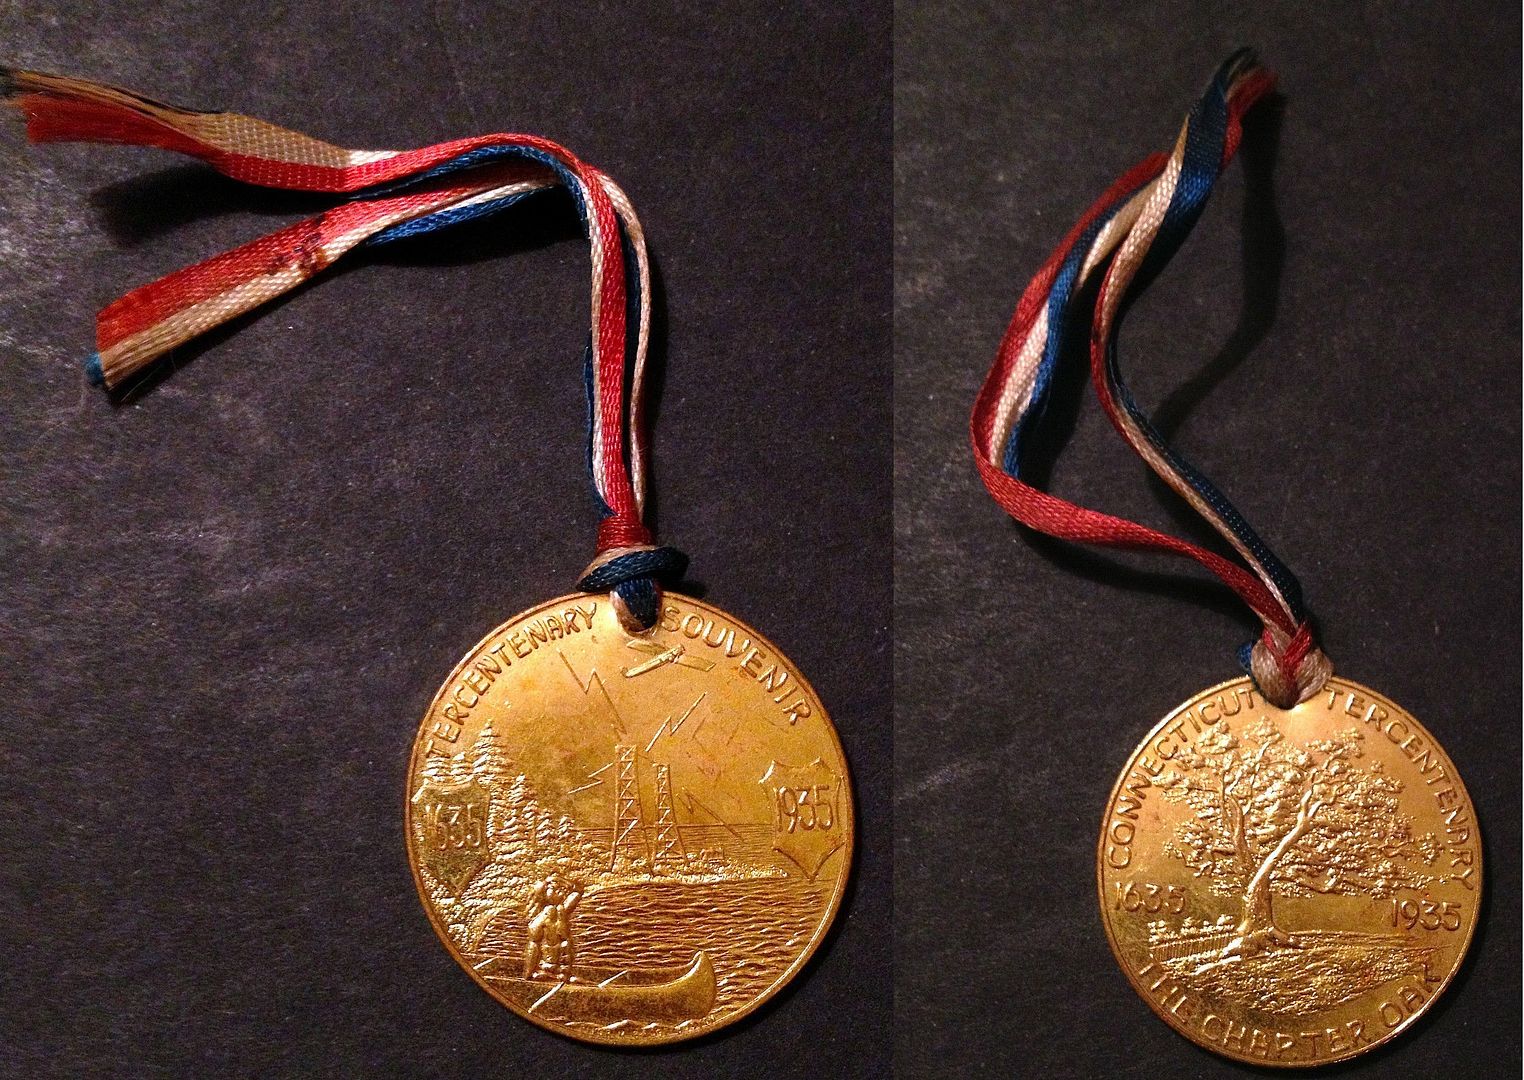 eBay_1935Conn_Medal_Combo.jpg